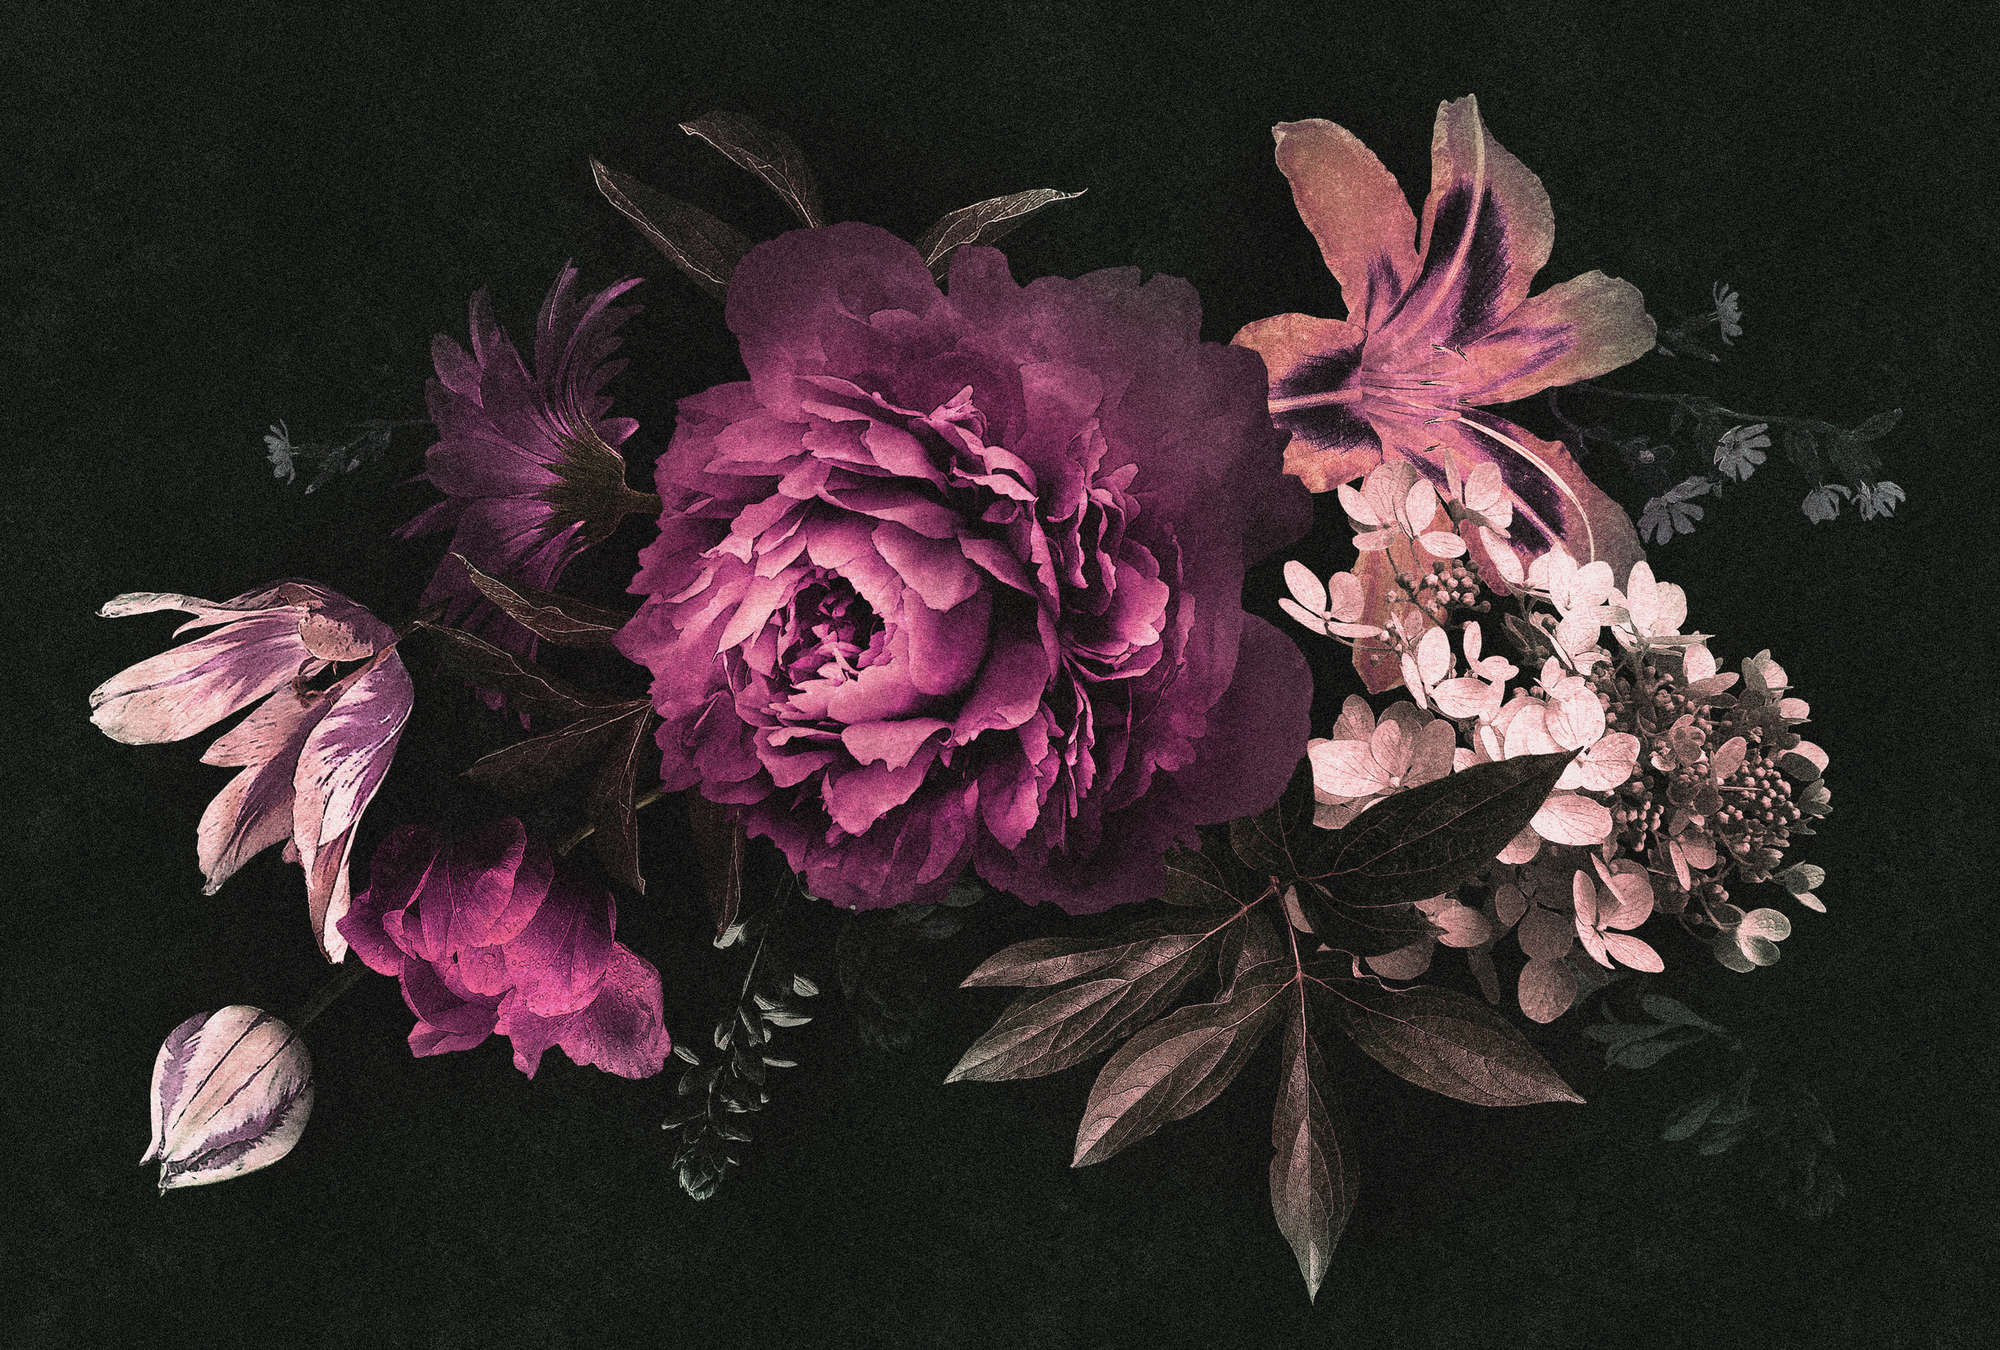             Drama queen 3 - Digital behang romantisch boeket bloemen - Kartonnen structuur - Roze, Zwart | Premium gladde fleece
        